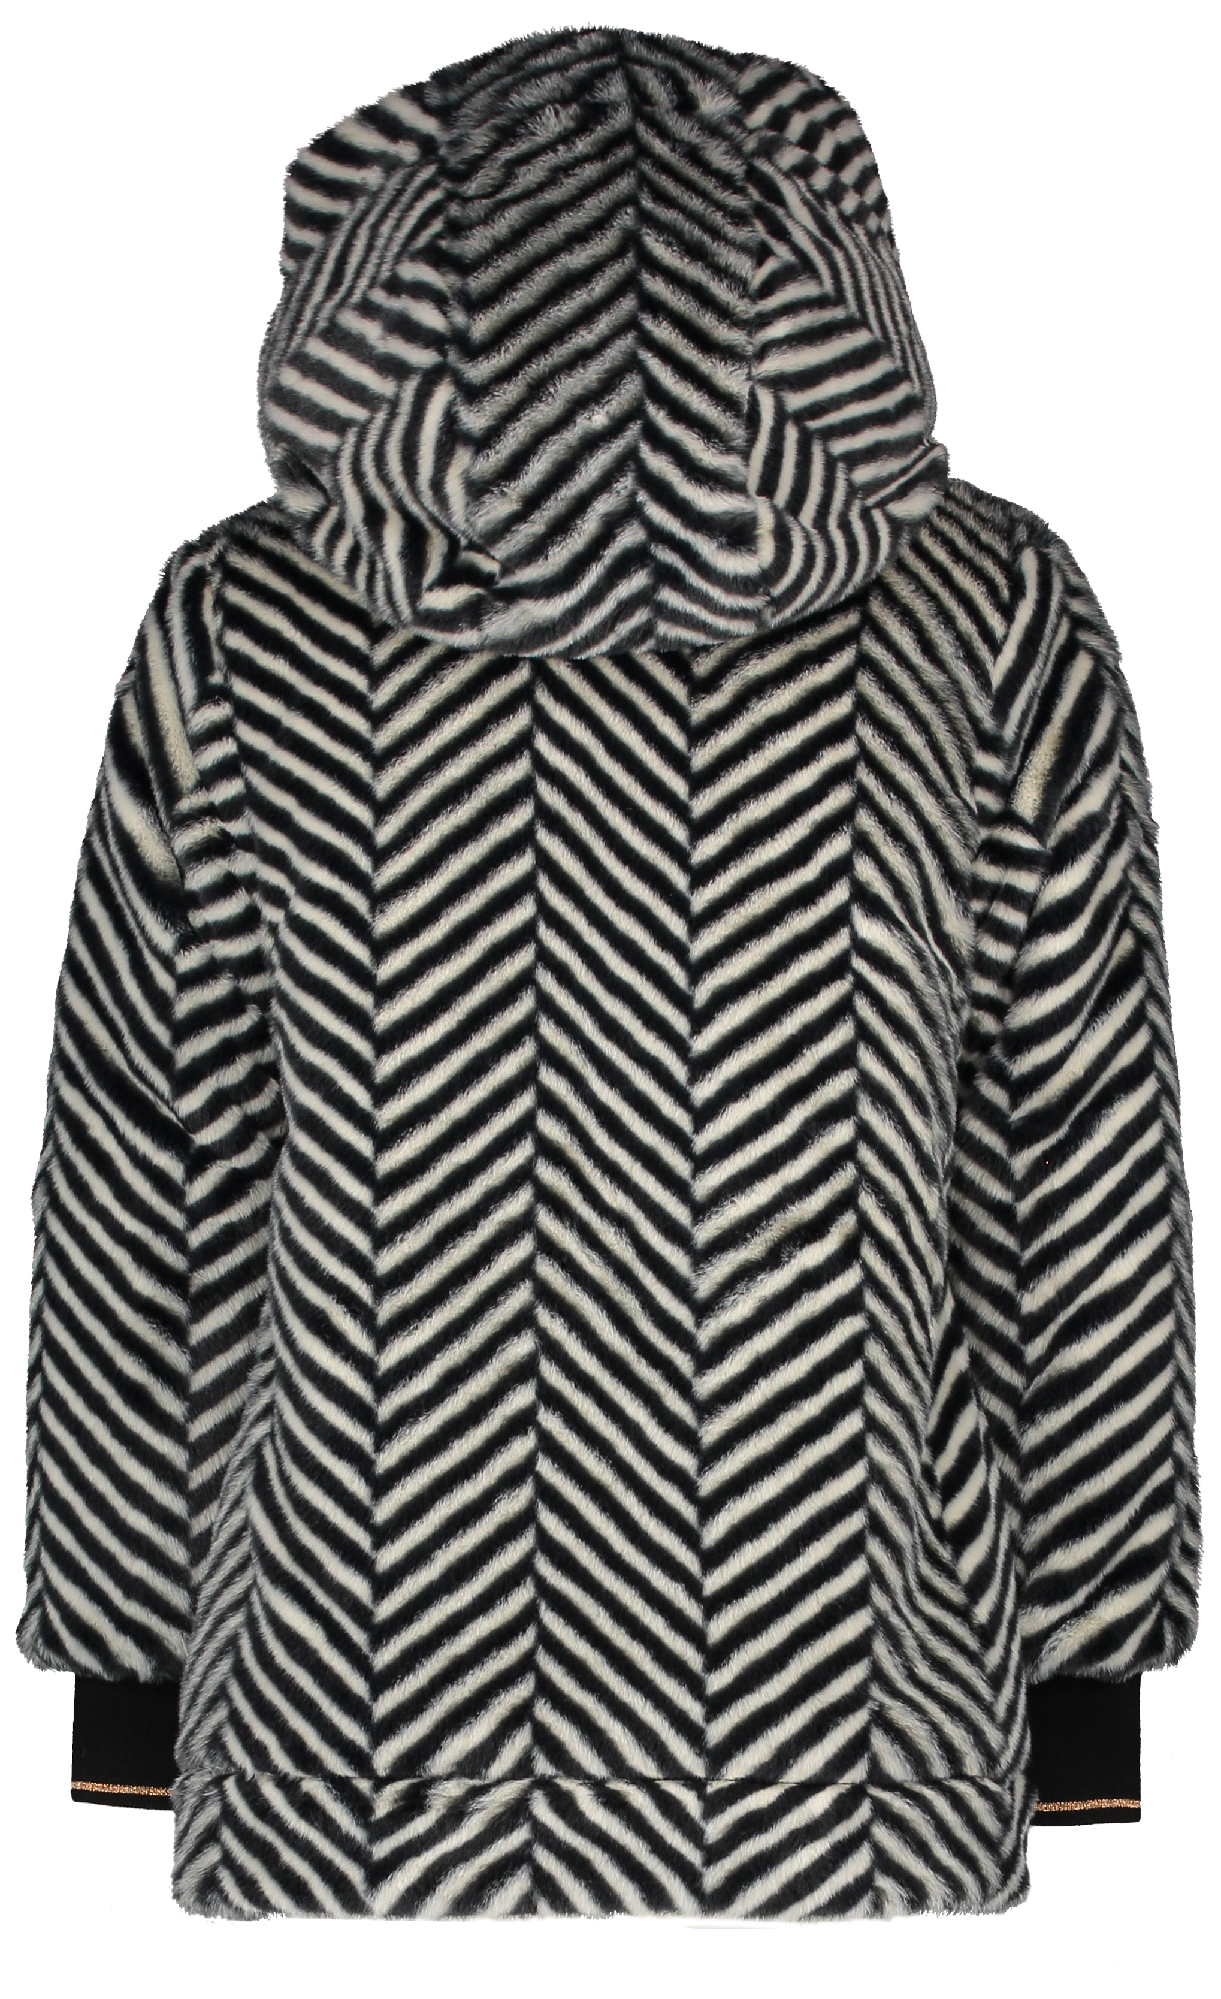 Meisjes Bria Reversible long jacket zigzag fur with hood van NoNo in de kleur Zwart in maat 116.